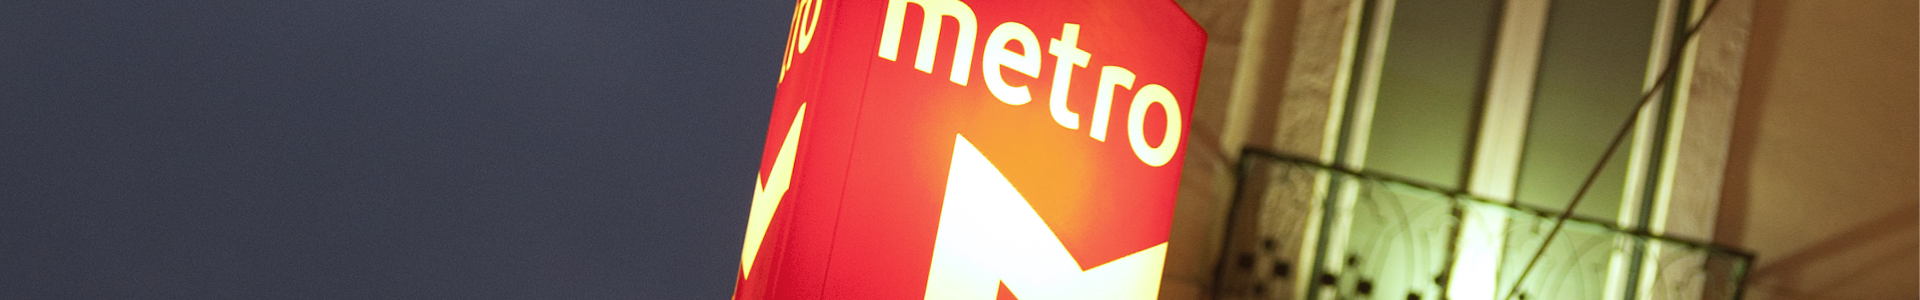 Banner - Logotipo do Metro sobre a cidade